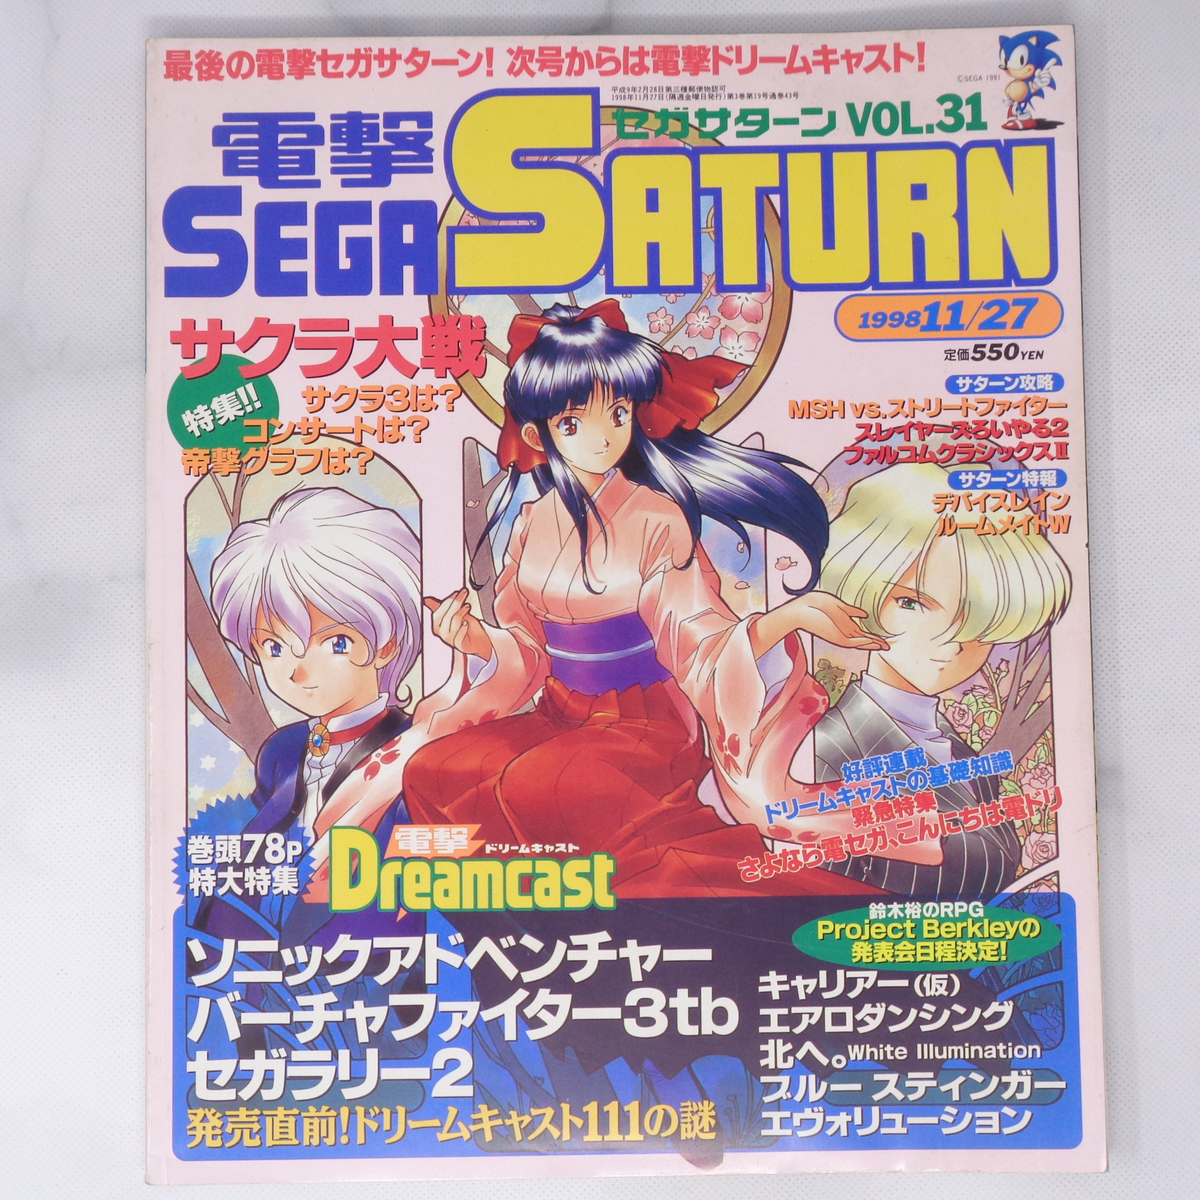 電撃SEGA SATURN 1998年11月27日号VOL.31 /最終号/サクラ大戦/電撃Dreamcast/セガラリー/電撃セガサターン/ゲーム雑誌[Free Shipping]の画像1